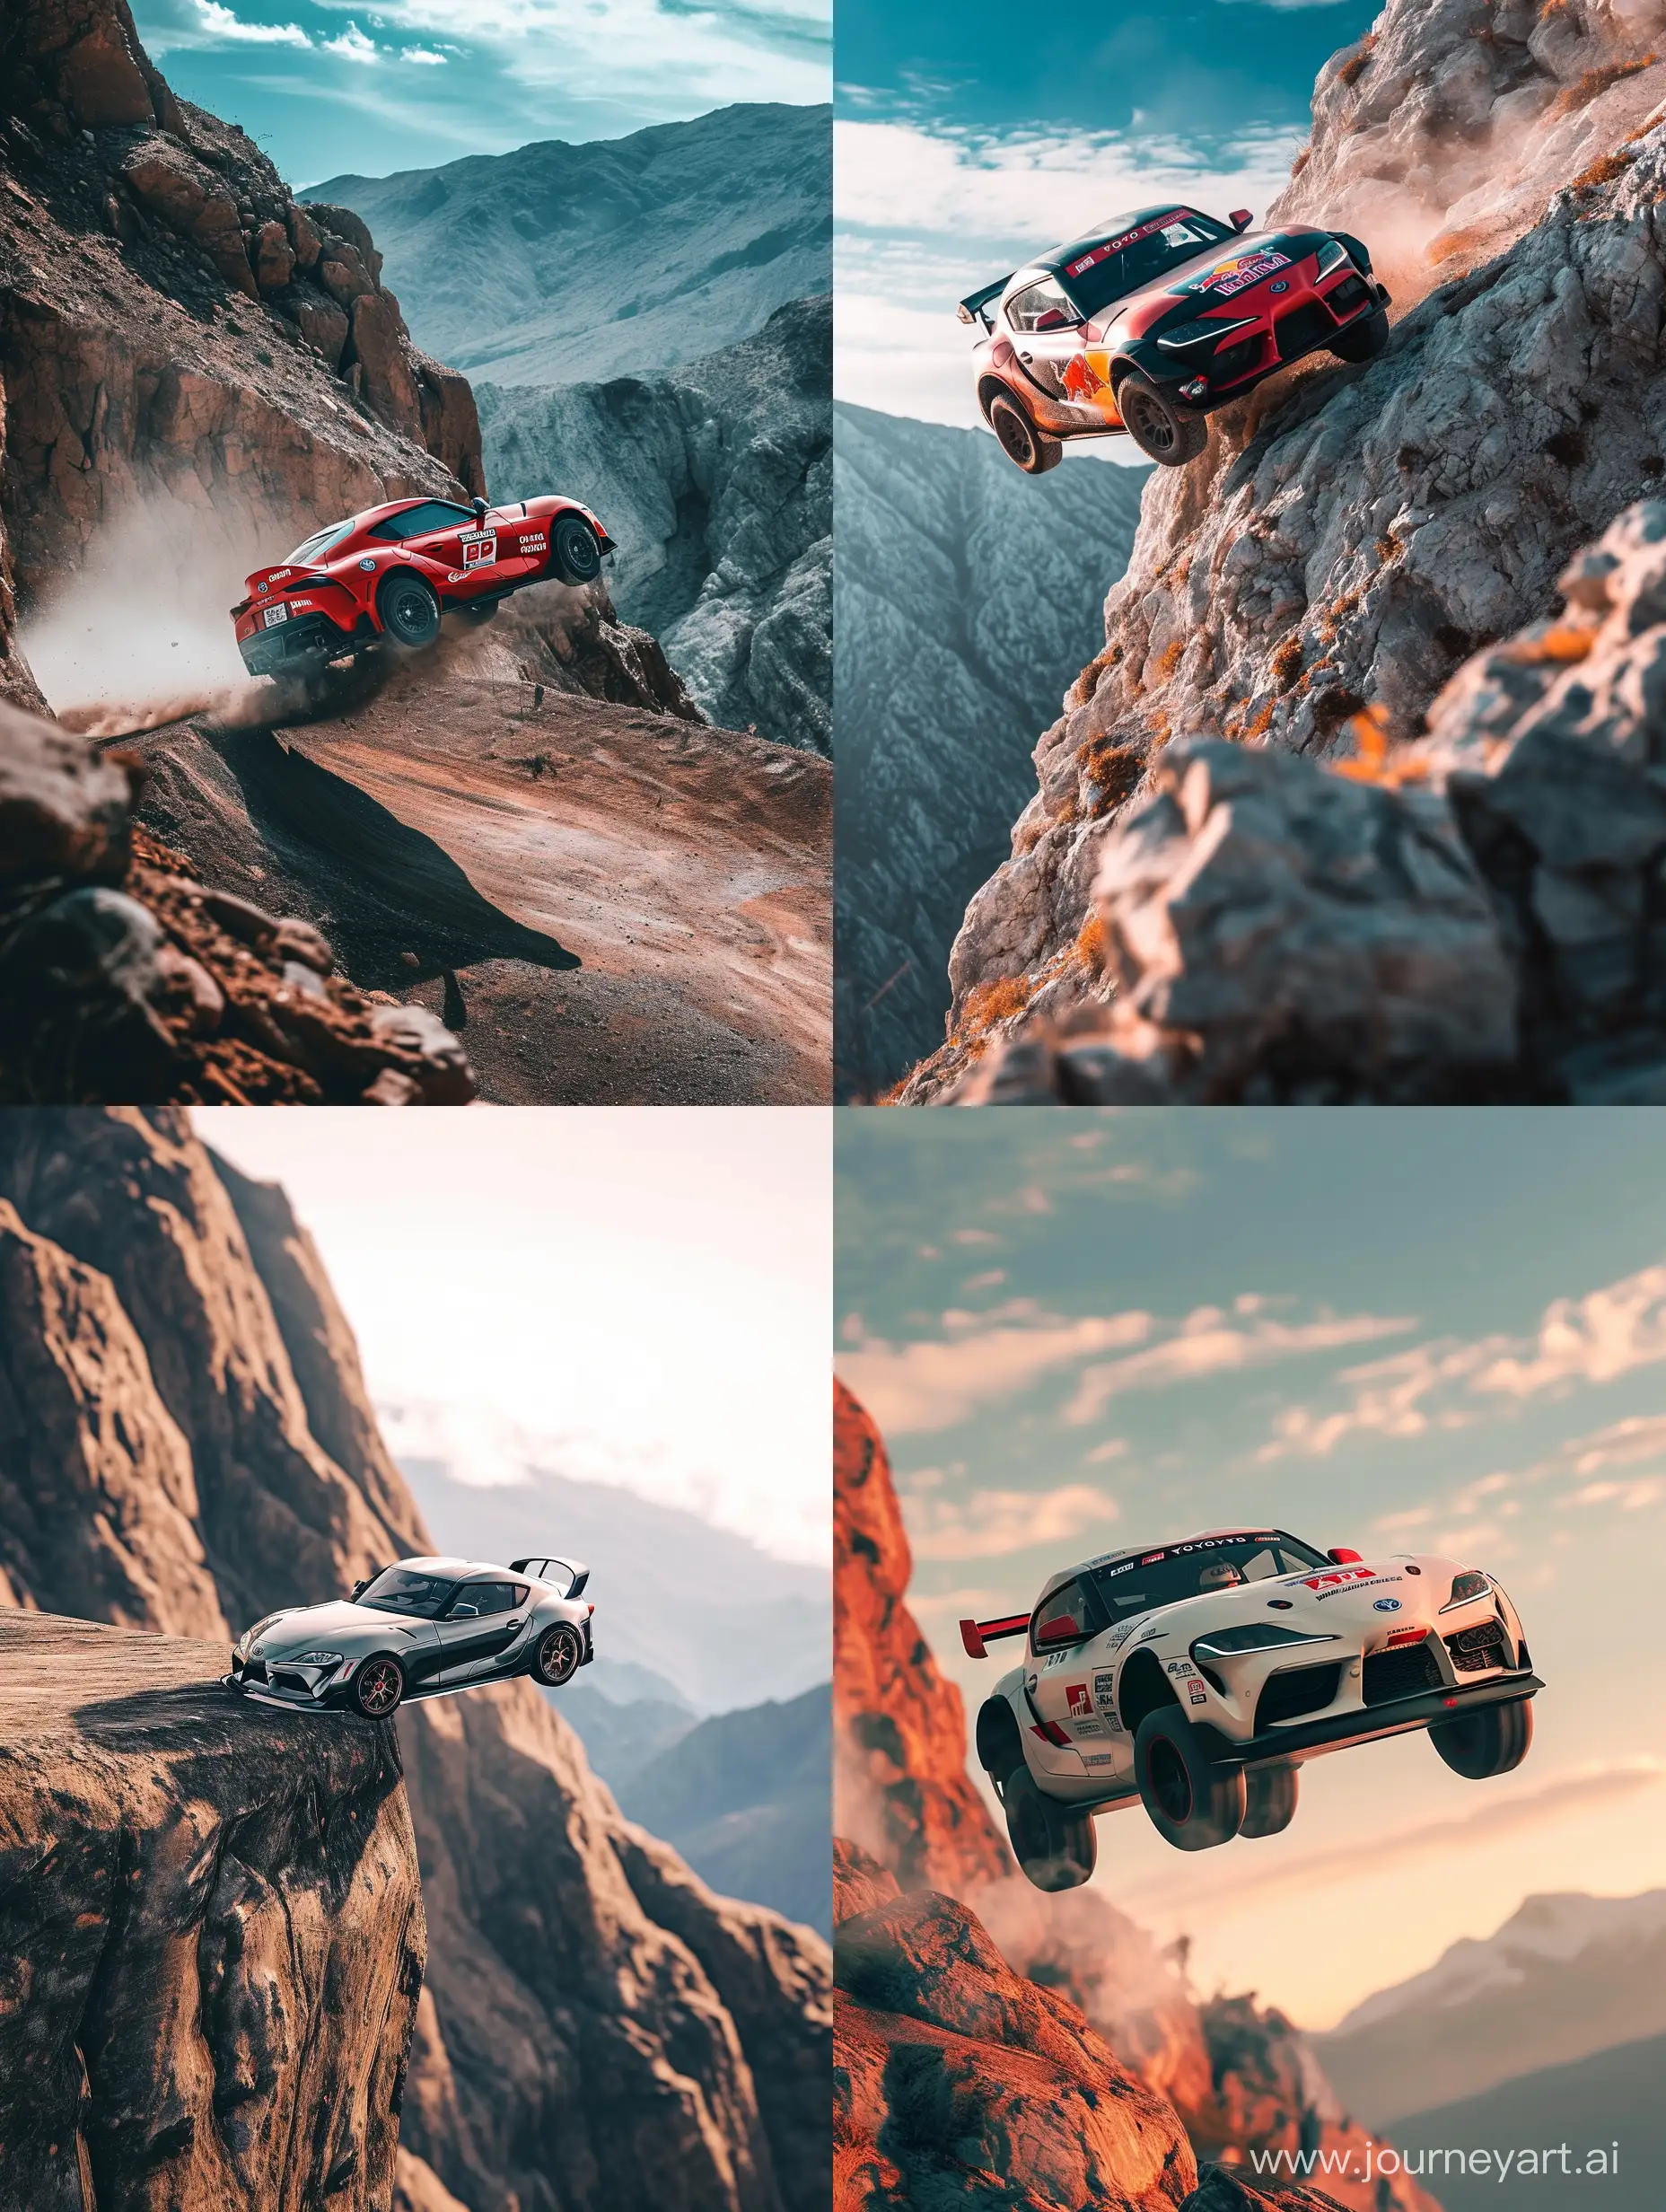 Toyota supra doing stunts in mountain. Midjourney style